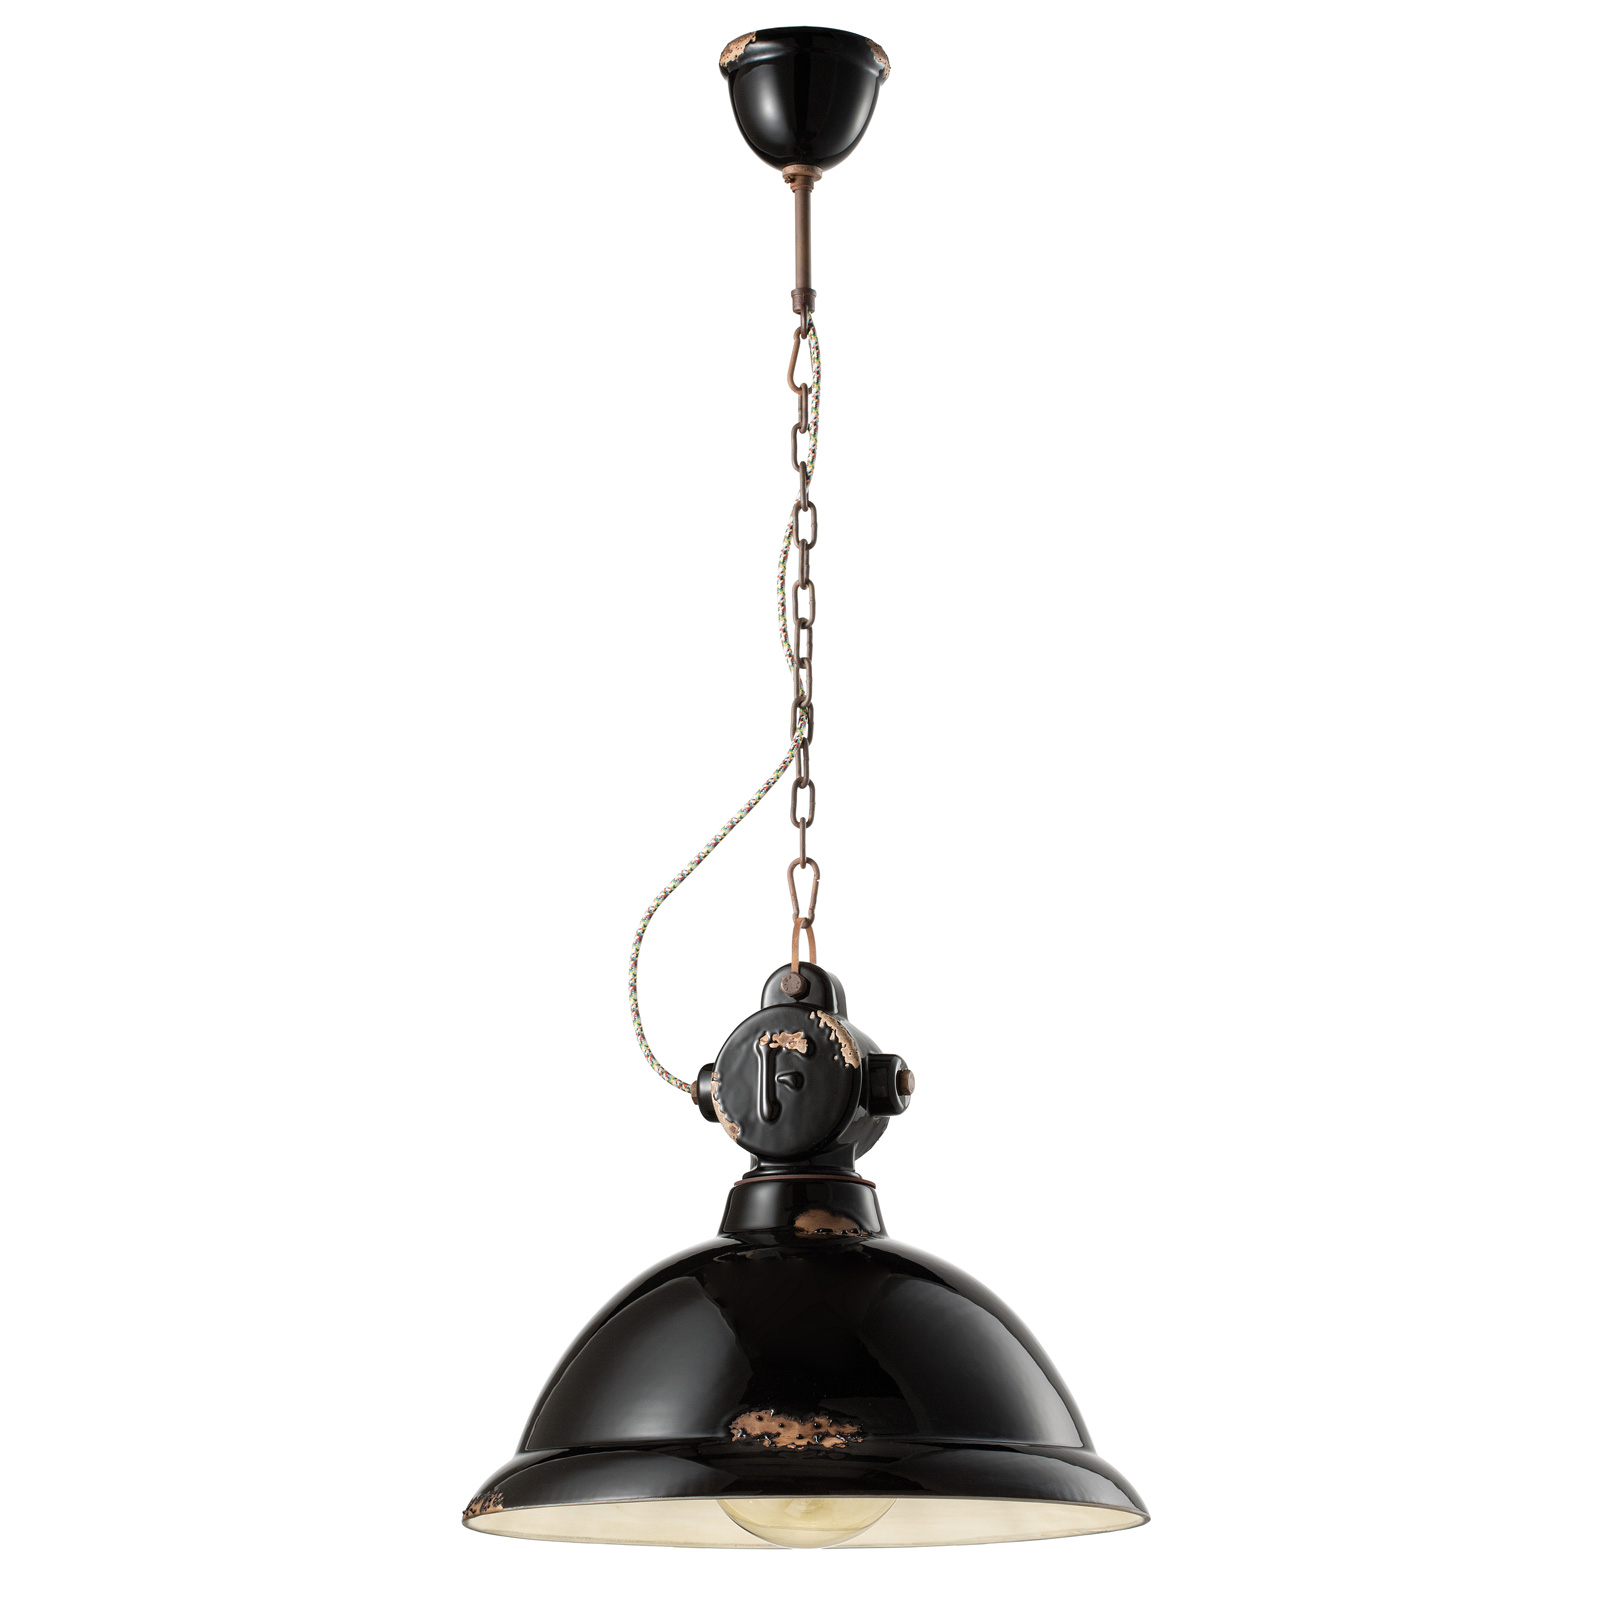 Hanglamp C1710 van keramiek, zwart